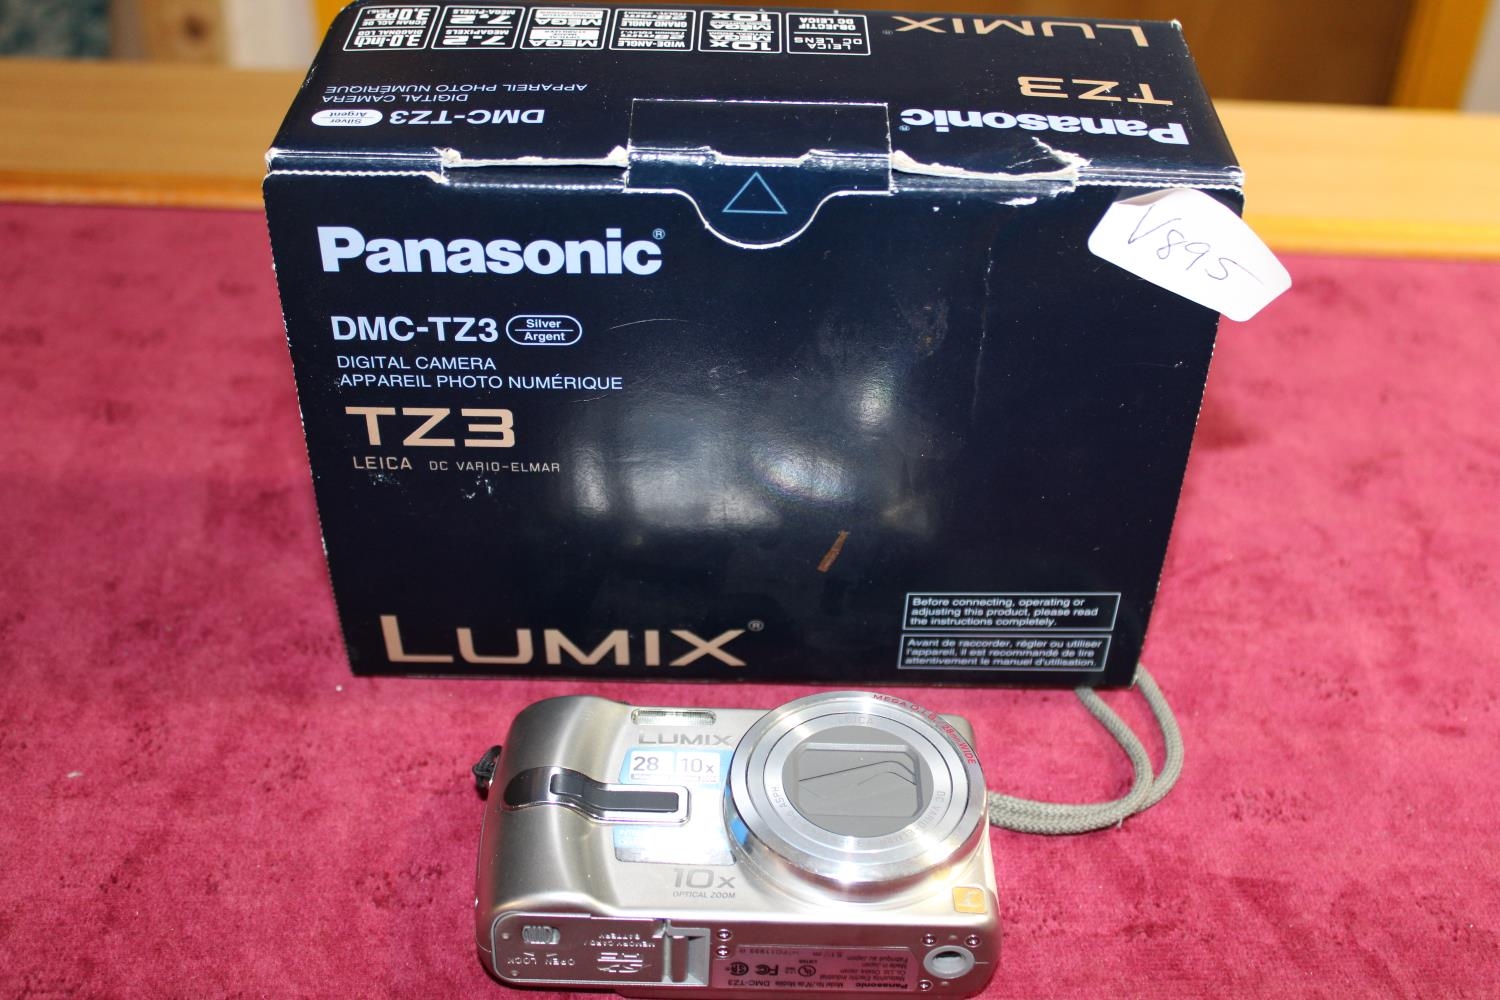 A Panasonic compact camera